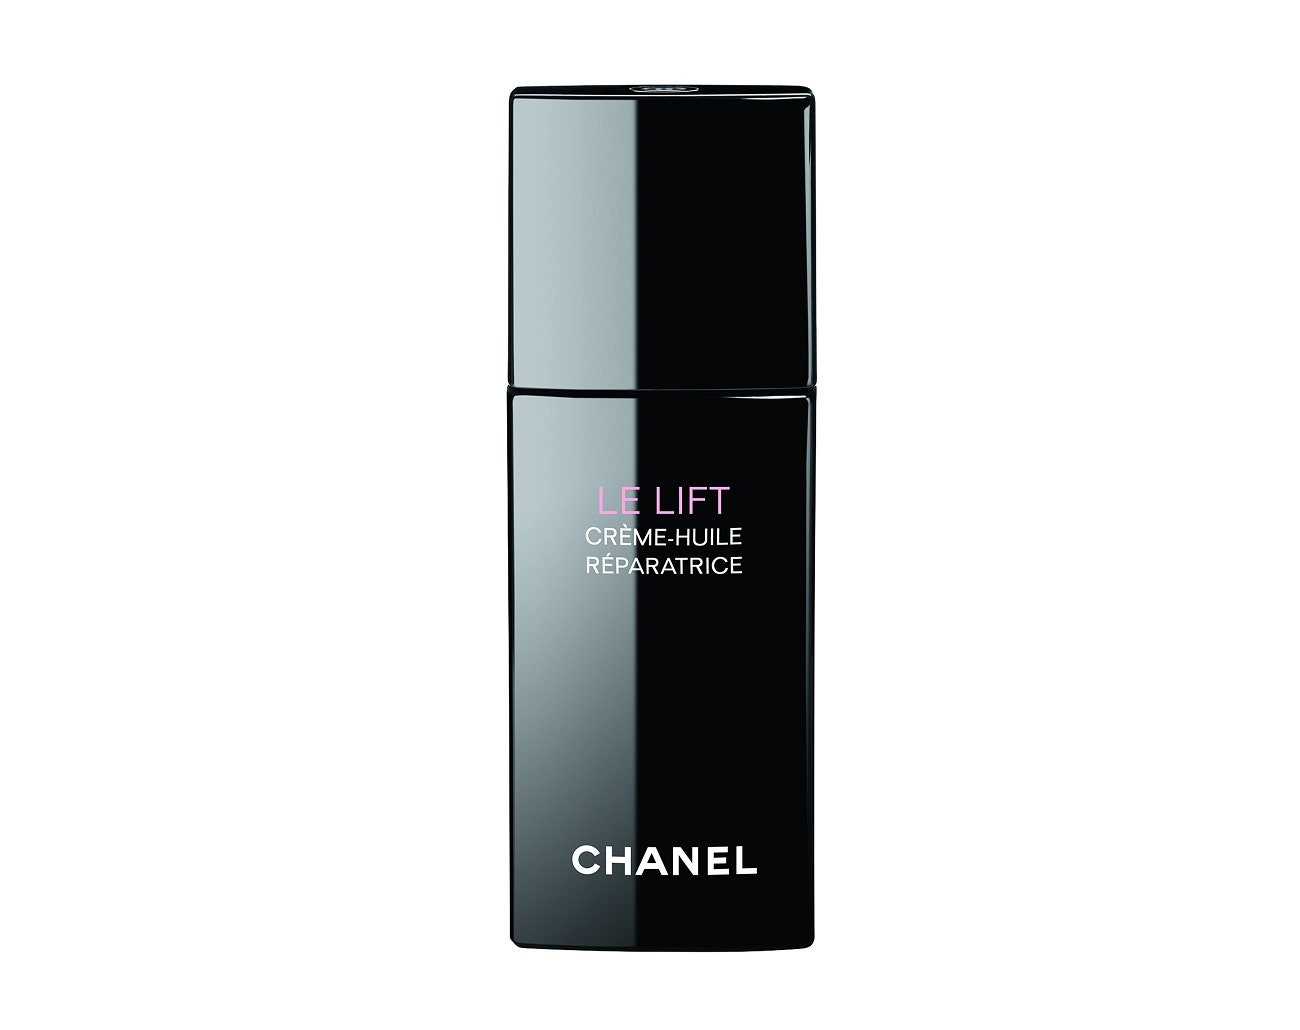 Chanel Le Lift CrèmeHuile Rparatrice восстанавливающее креммасло для шеи и лица | Allure